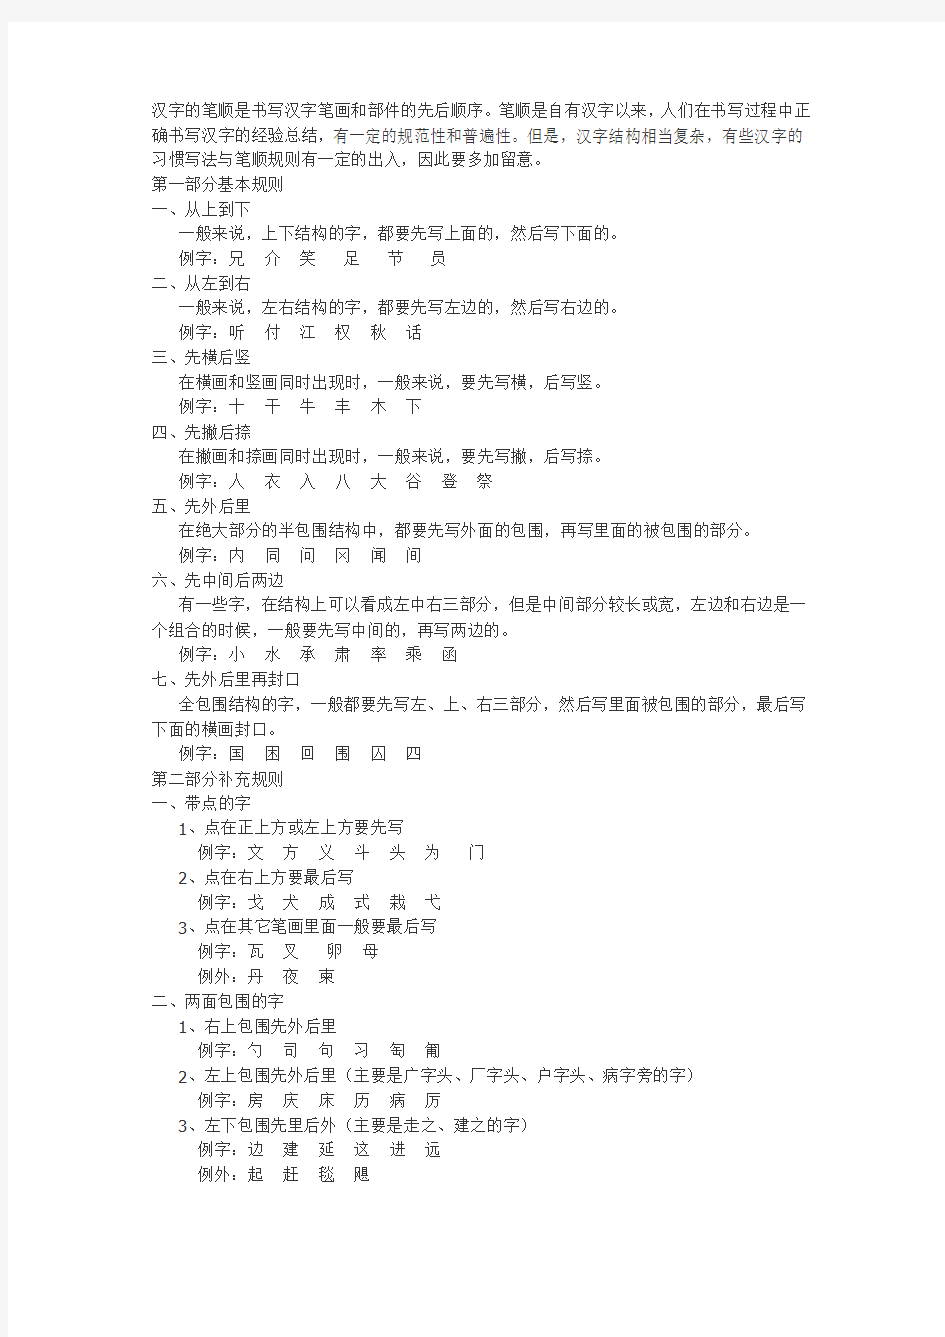 汉字的笔顺是书写汉字笔画和部件的先后顺序